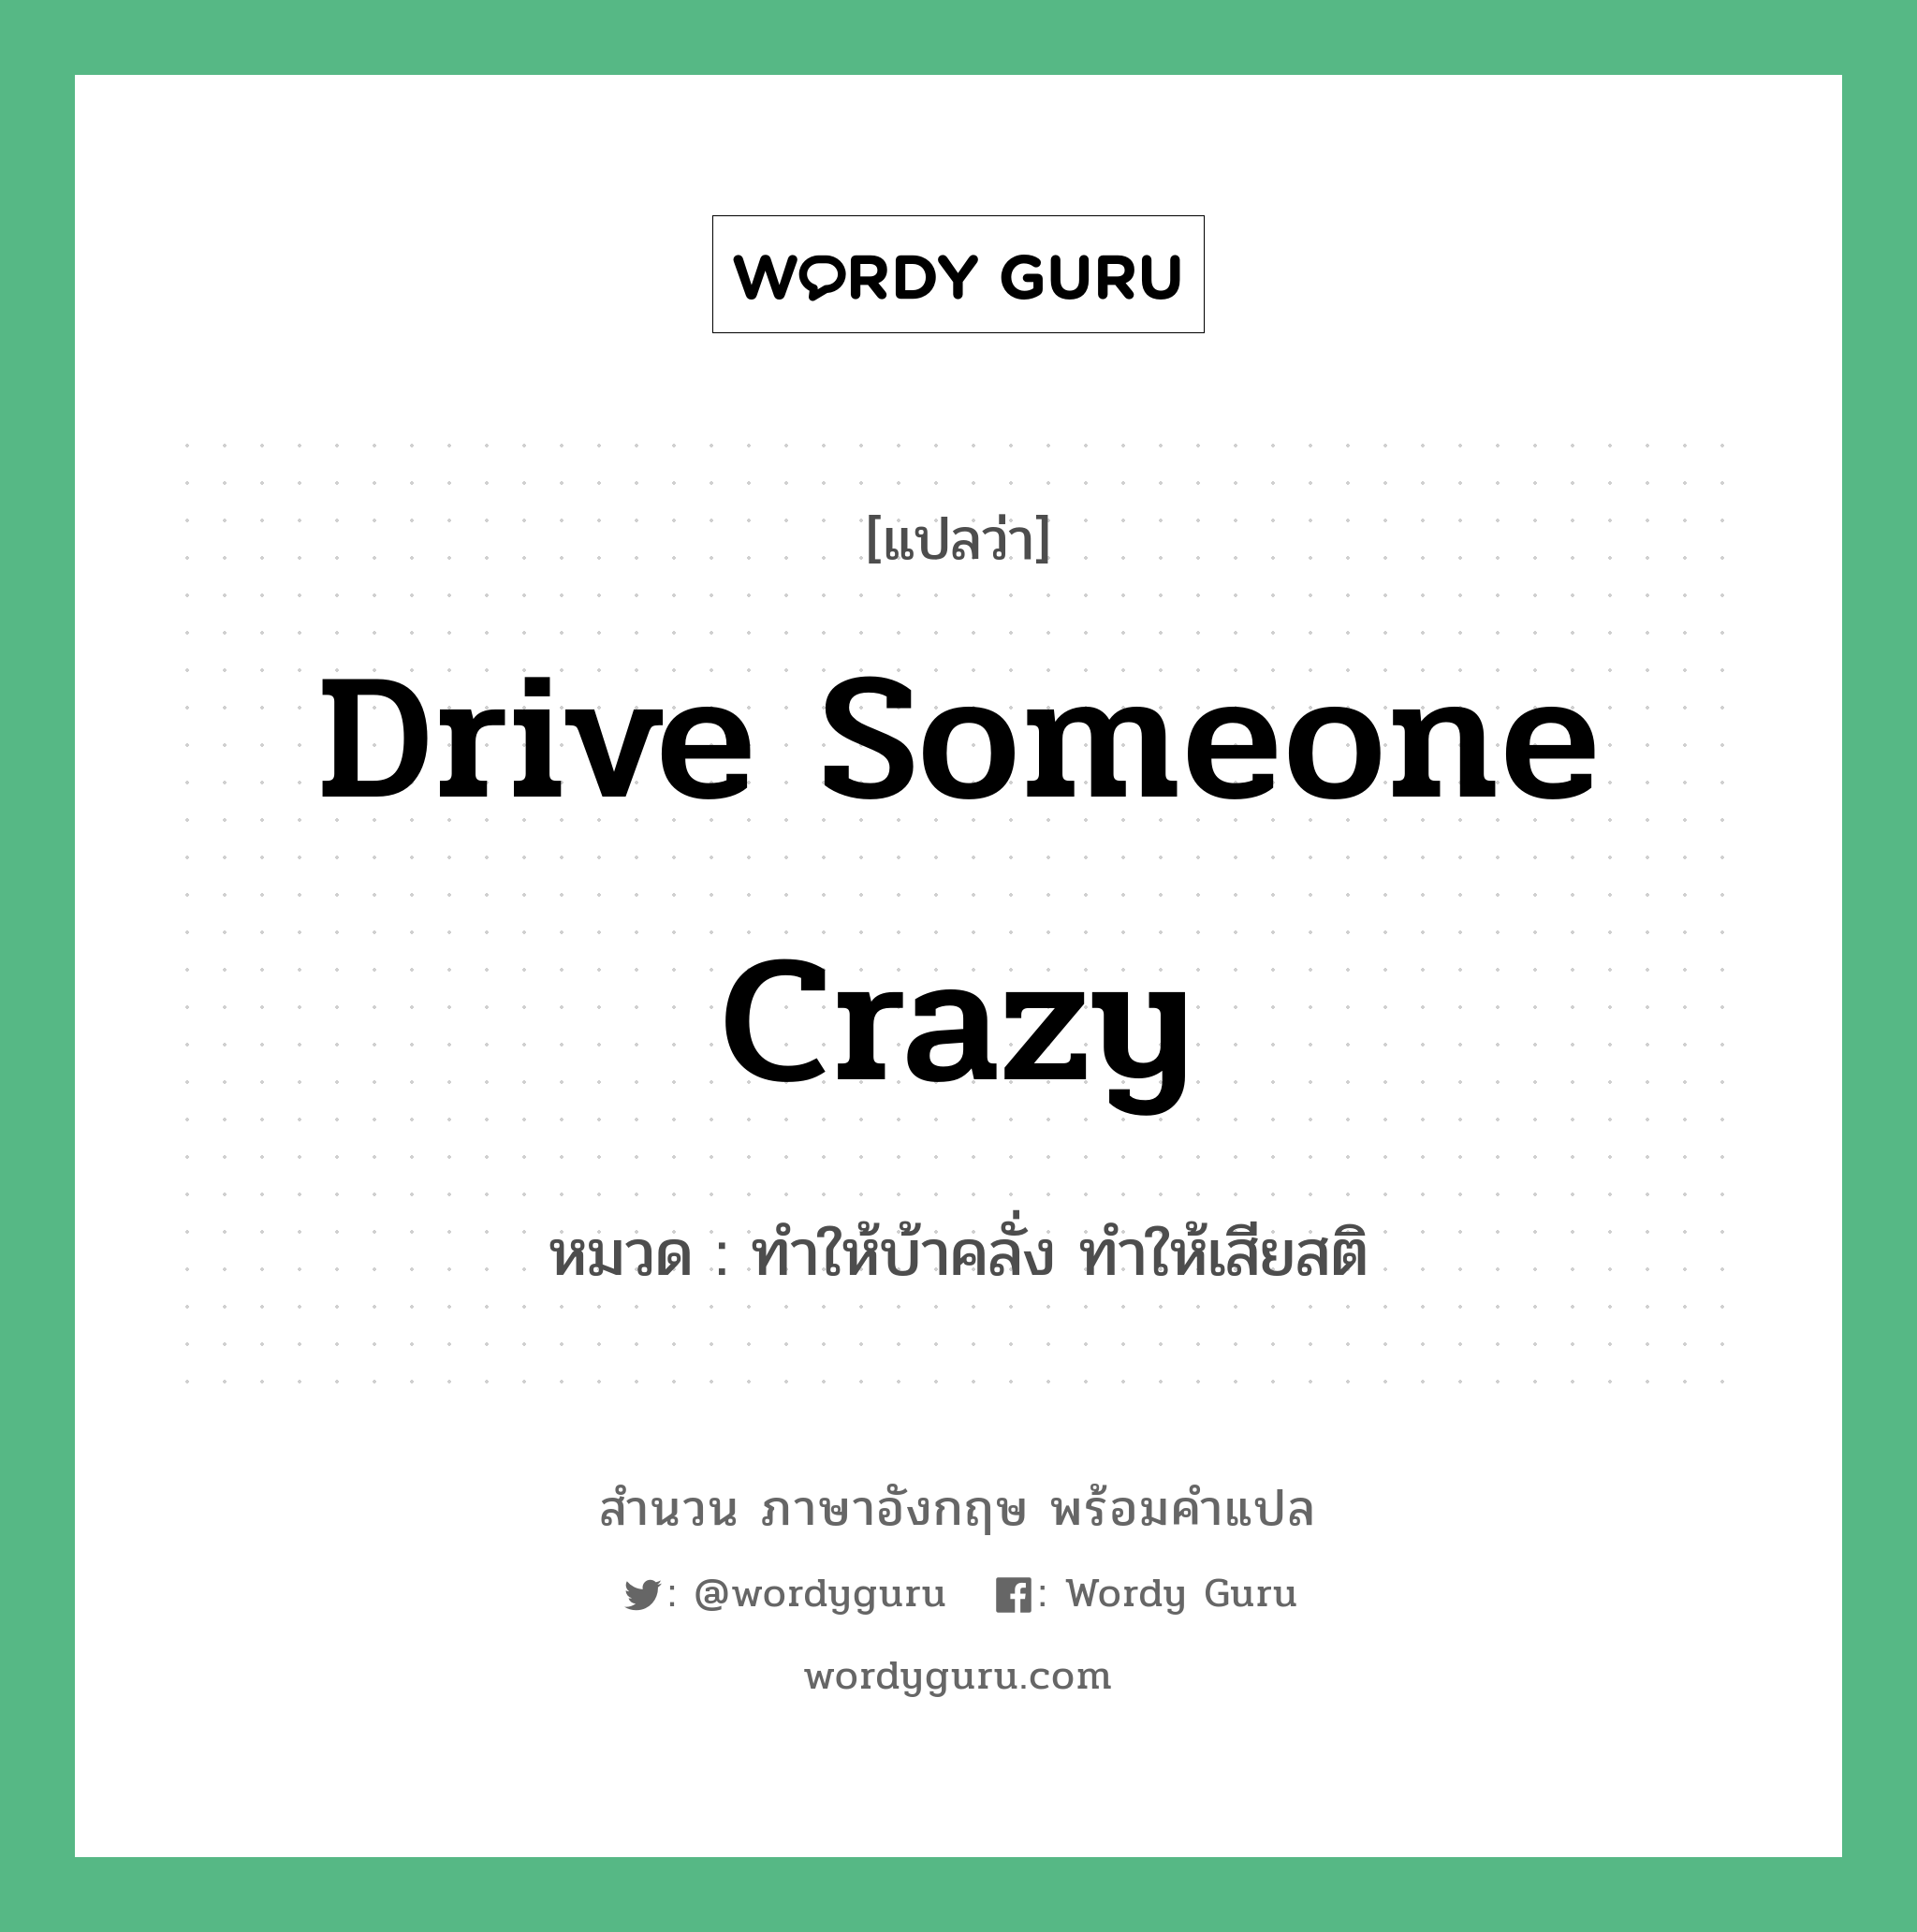 Drive someone crazy แปลว่า?, สำนวนภาษาอังกฤษ Drive someone crazy หมวด ทำให้บ้าคลั่ง ทำให้เสียสติ